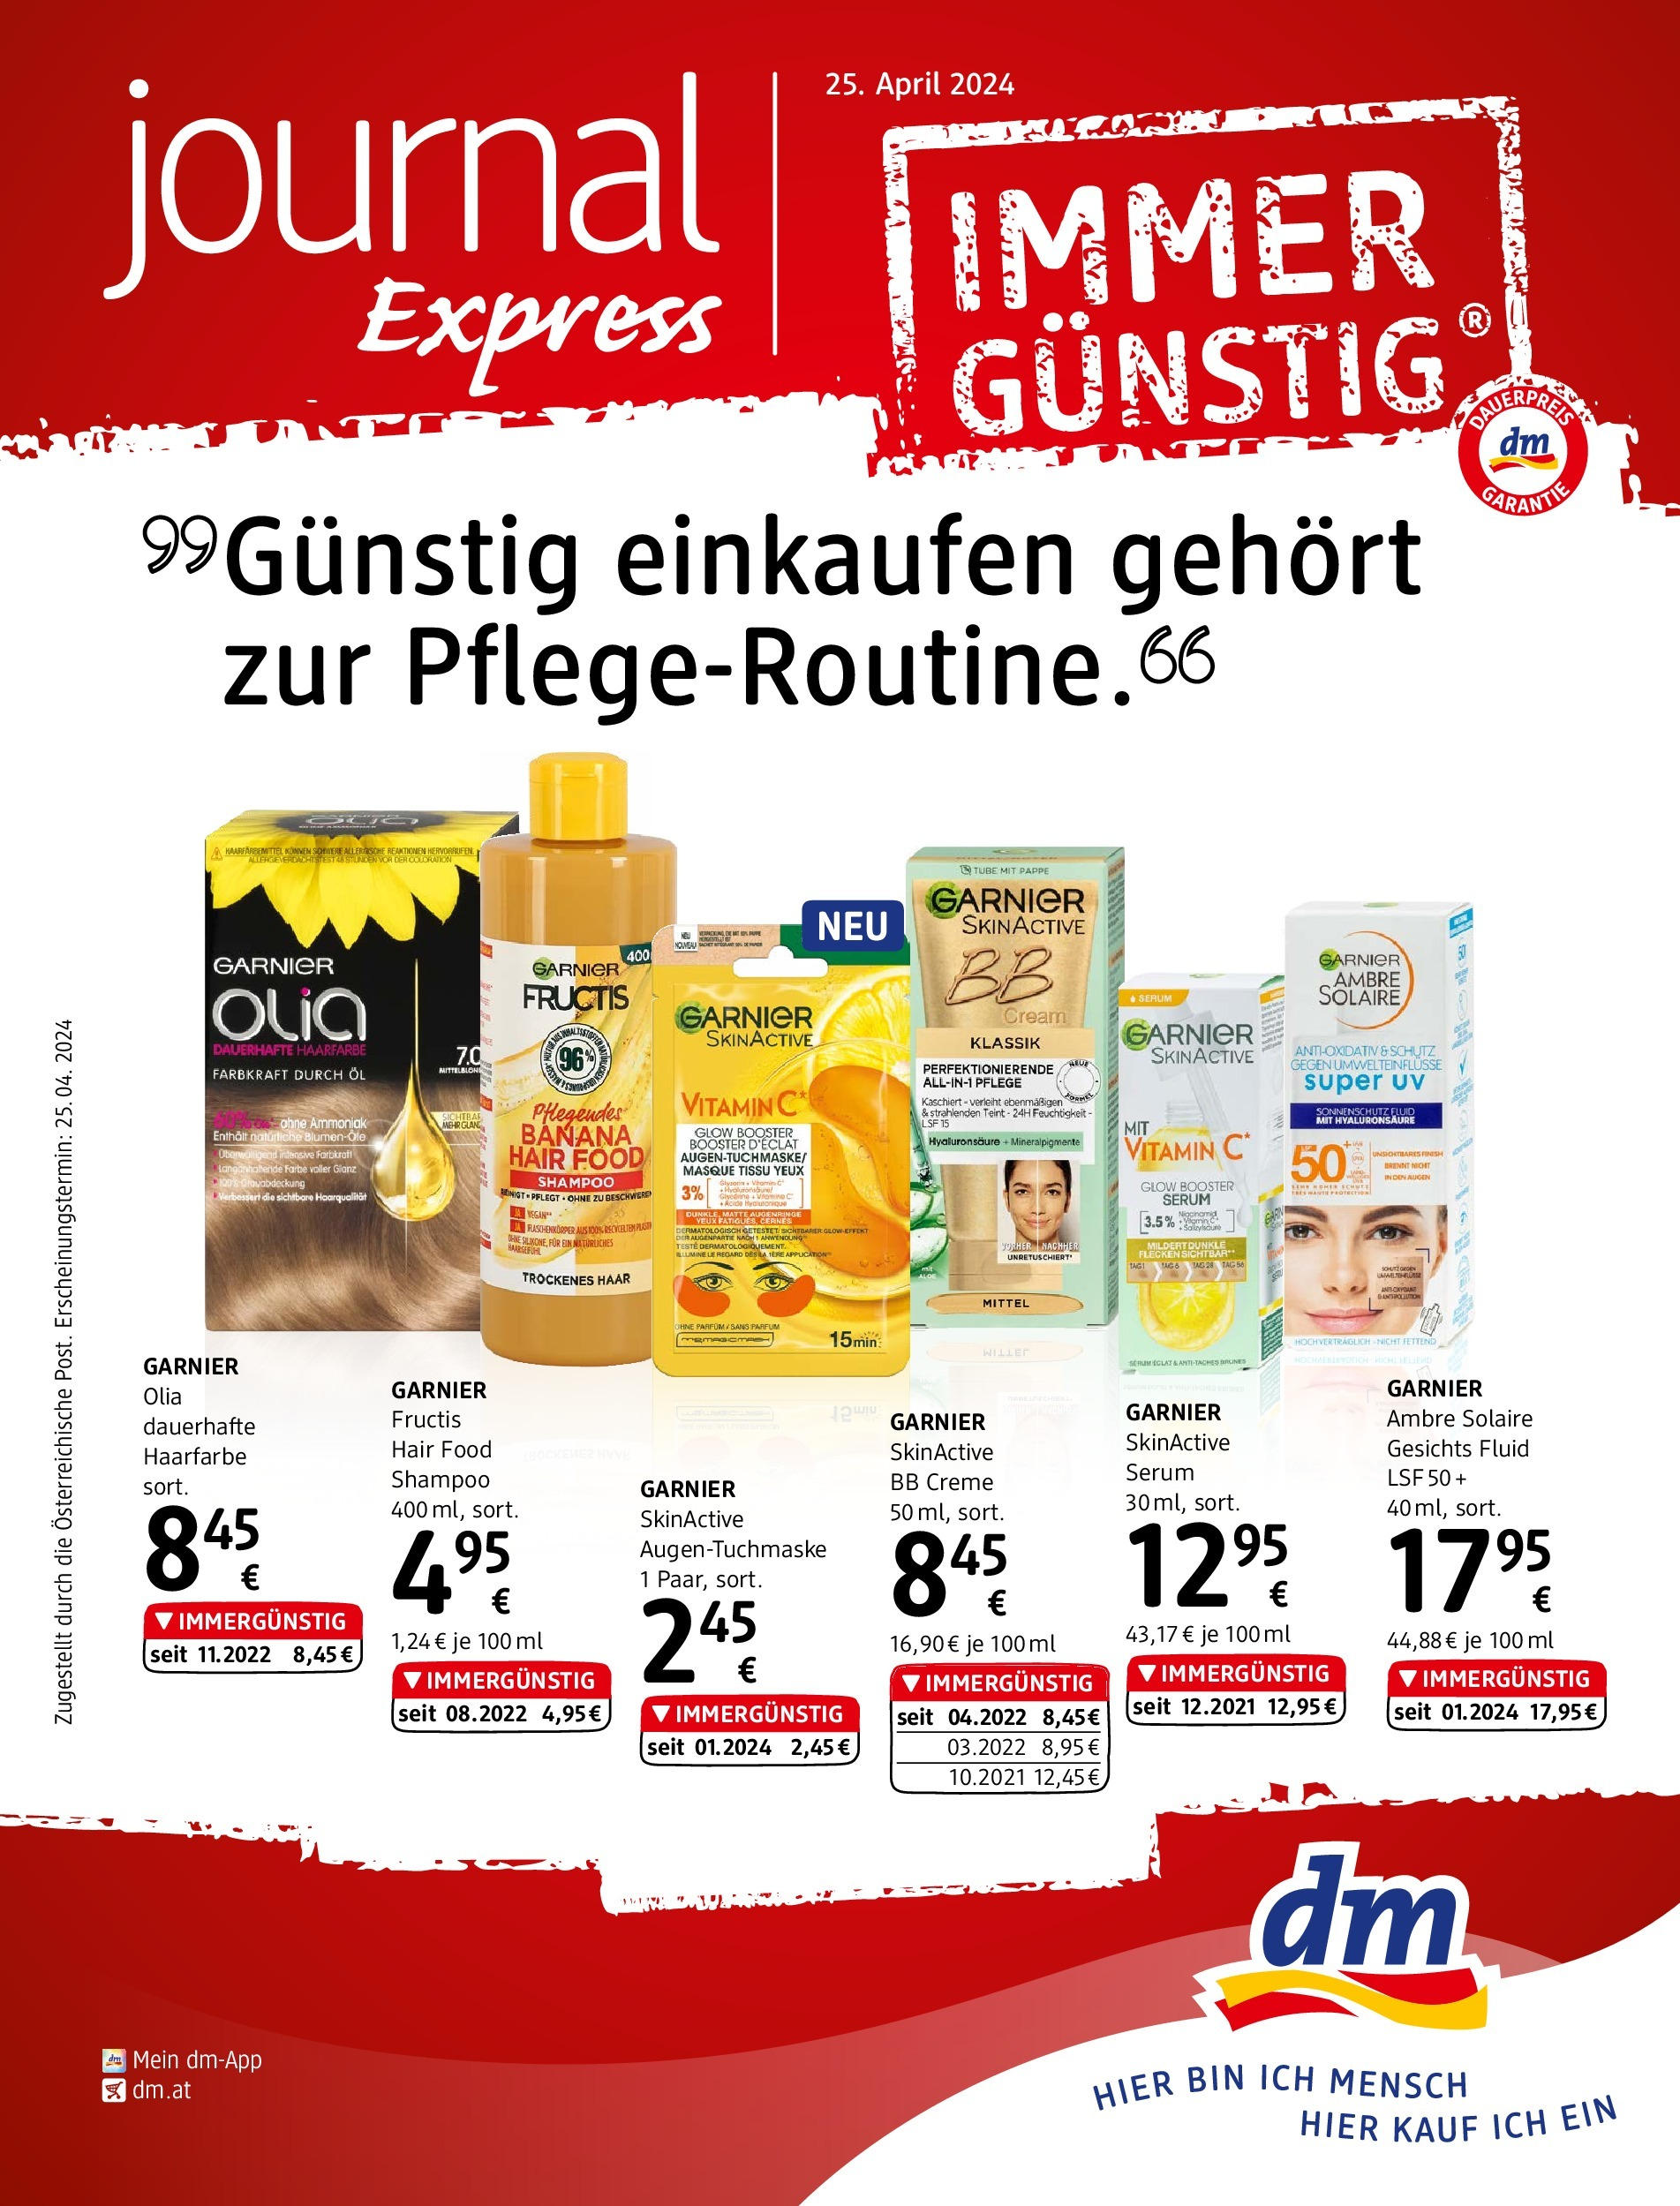 dm drogerie markt Flugblatt April 2024 von 25.04.2024 - Aktuelle Angebote | Seite: 1 | Produkte: Parfüm, Creme